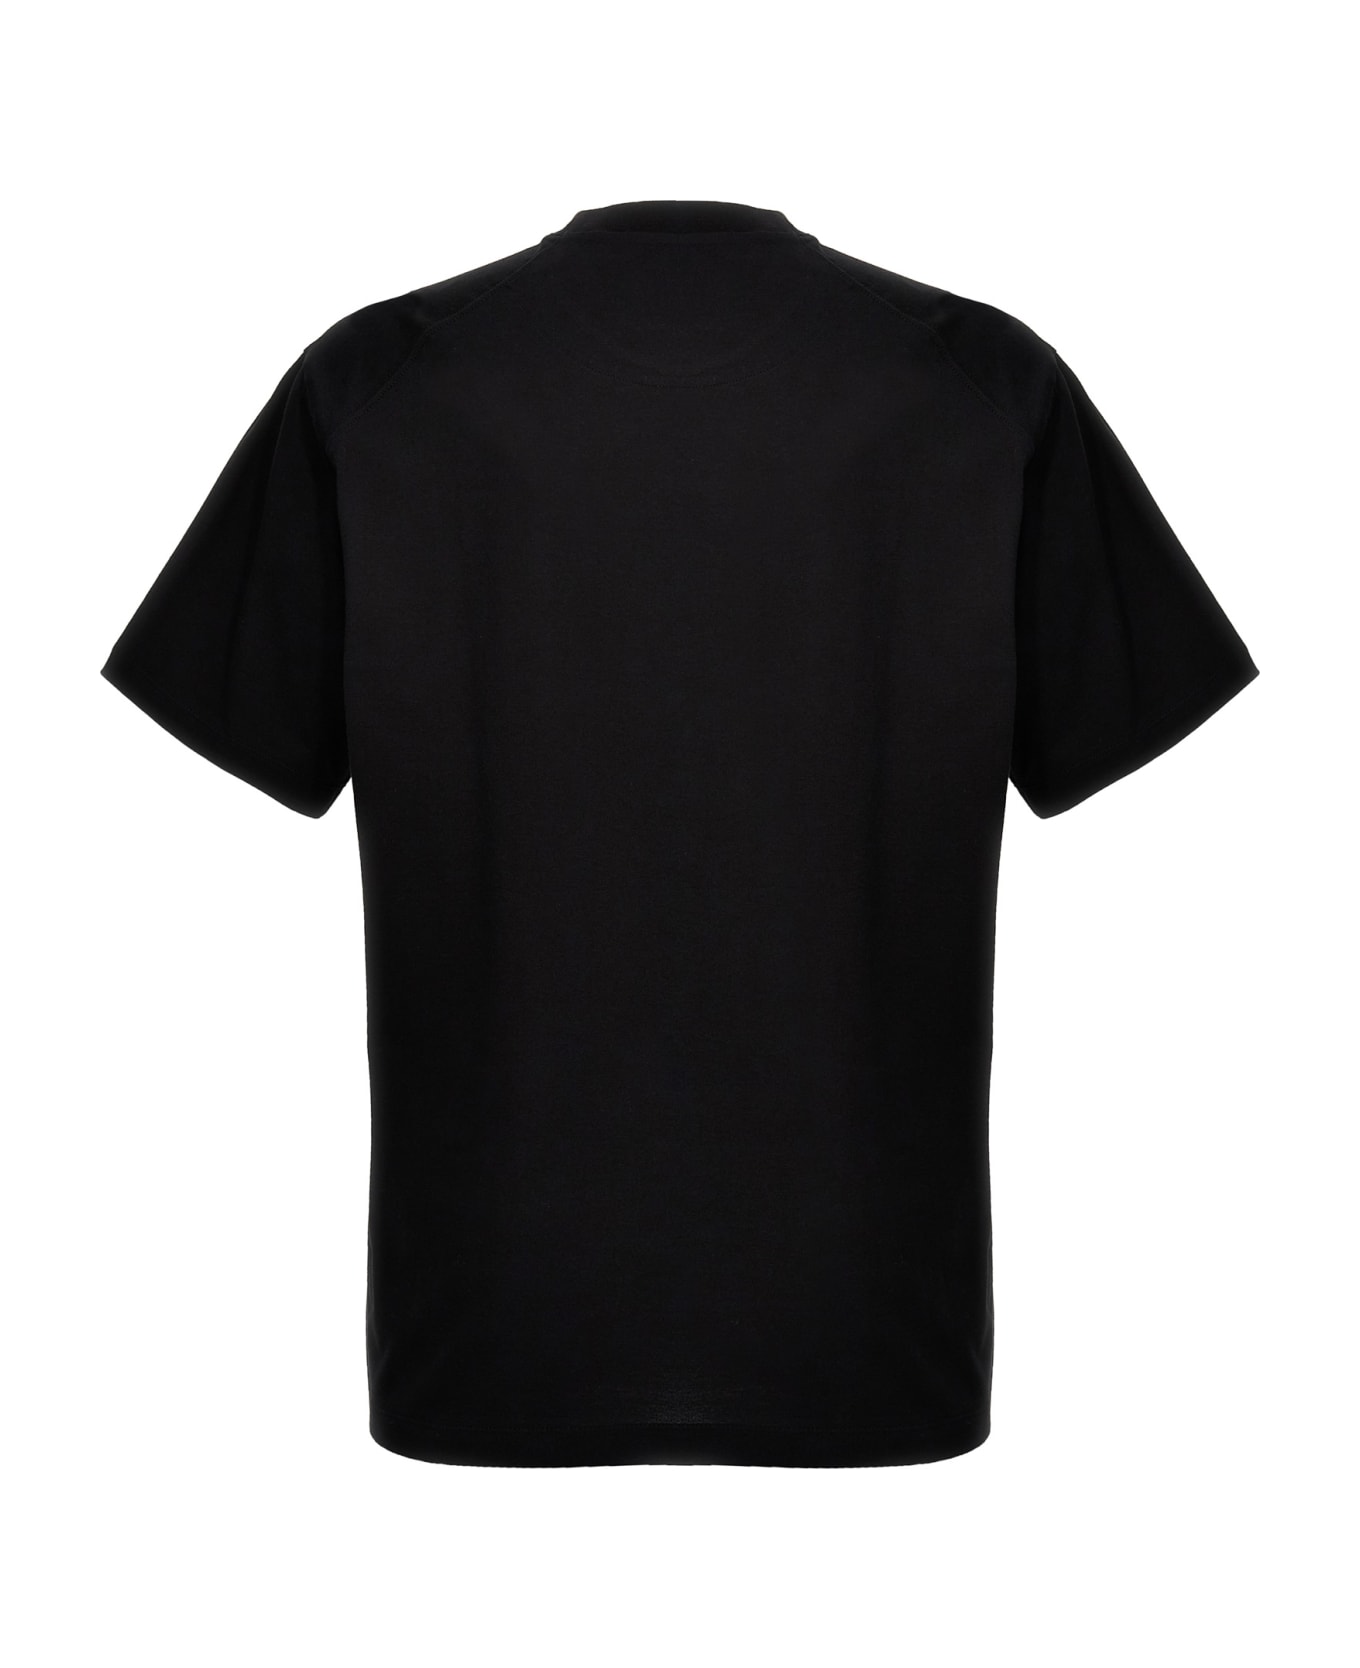 Y-3 'gfx' T-shirt - Black  